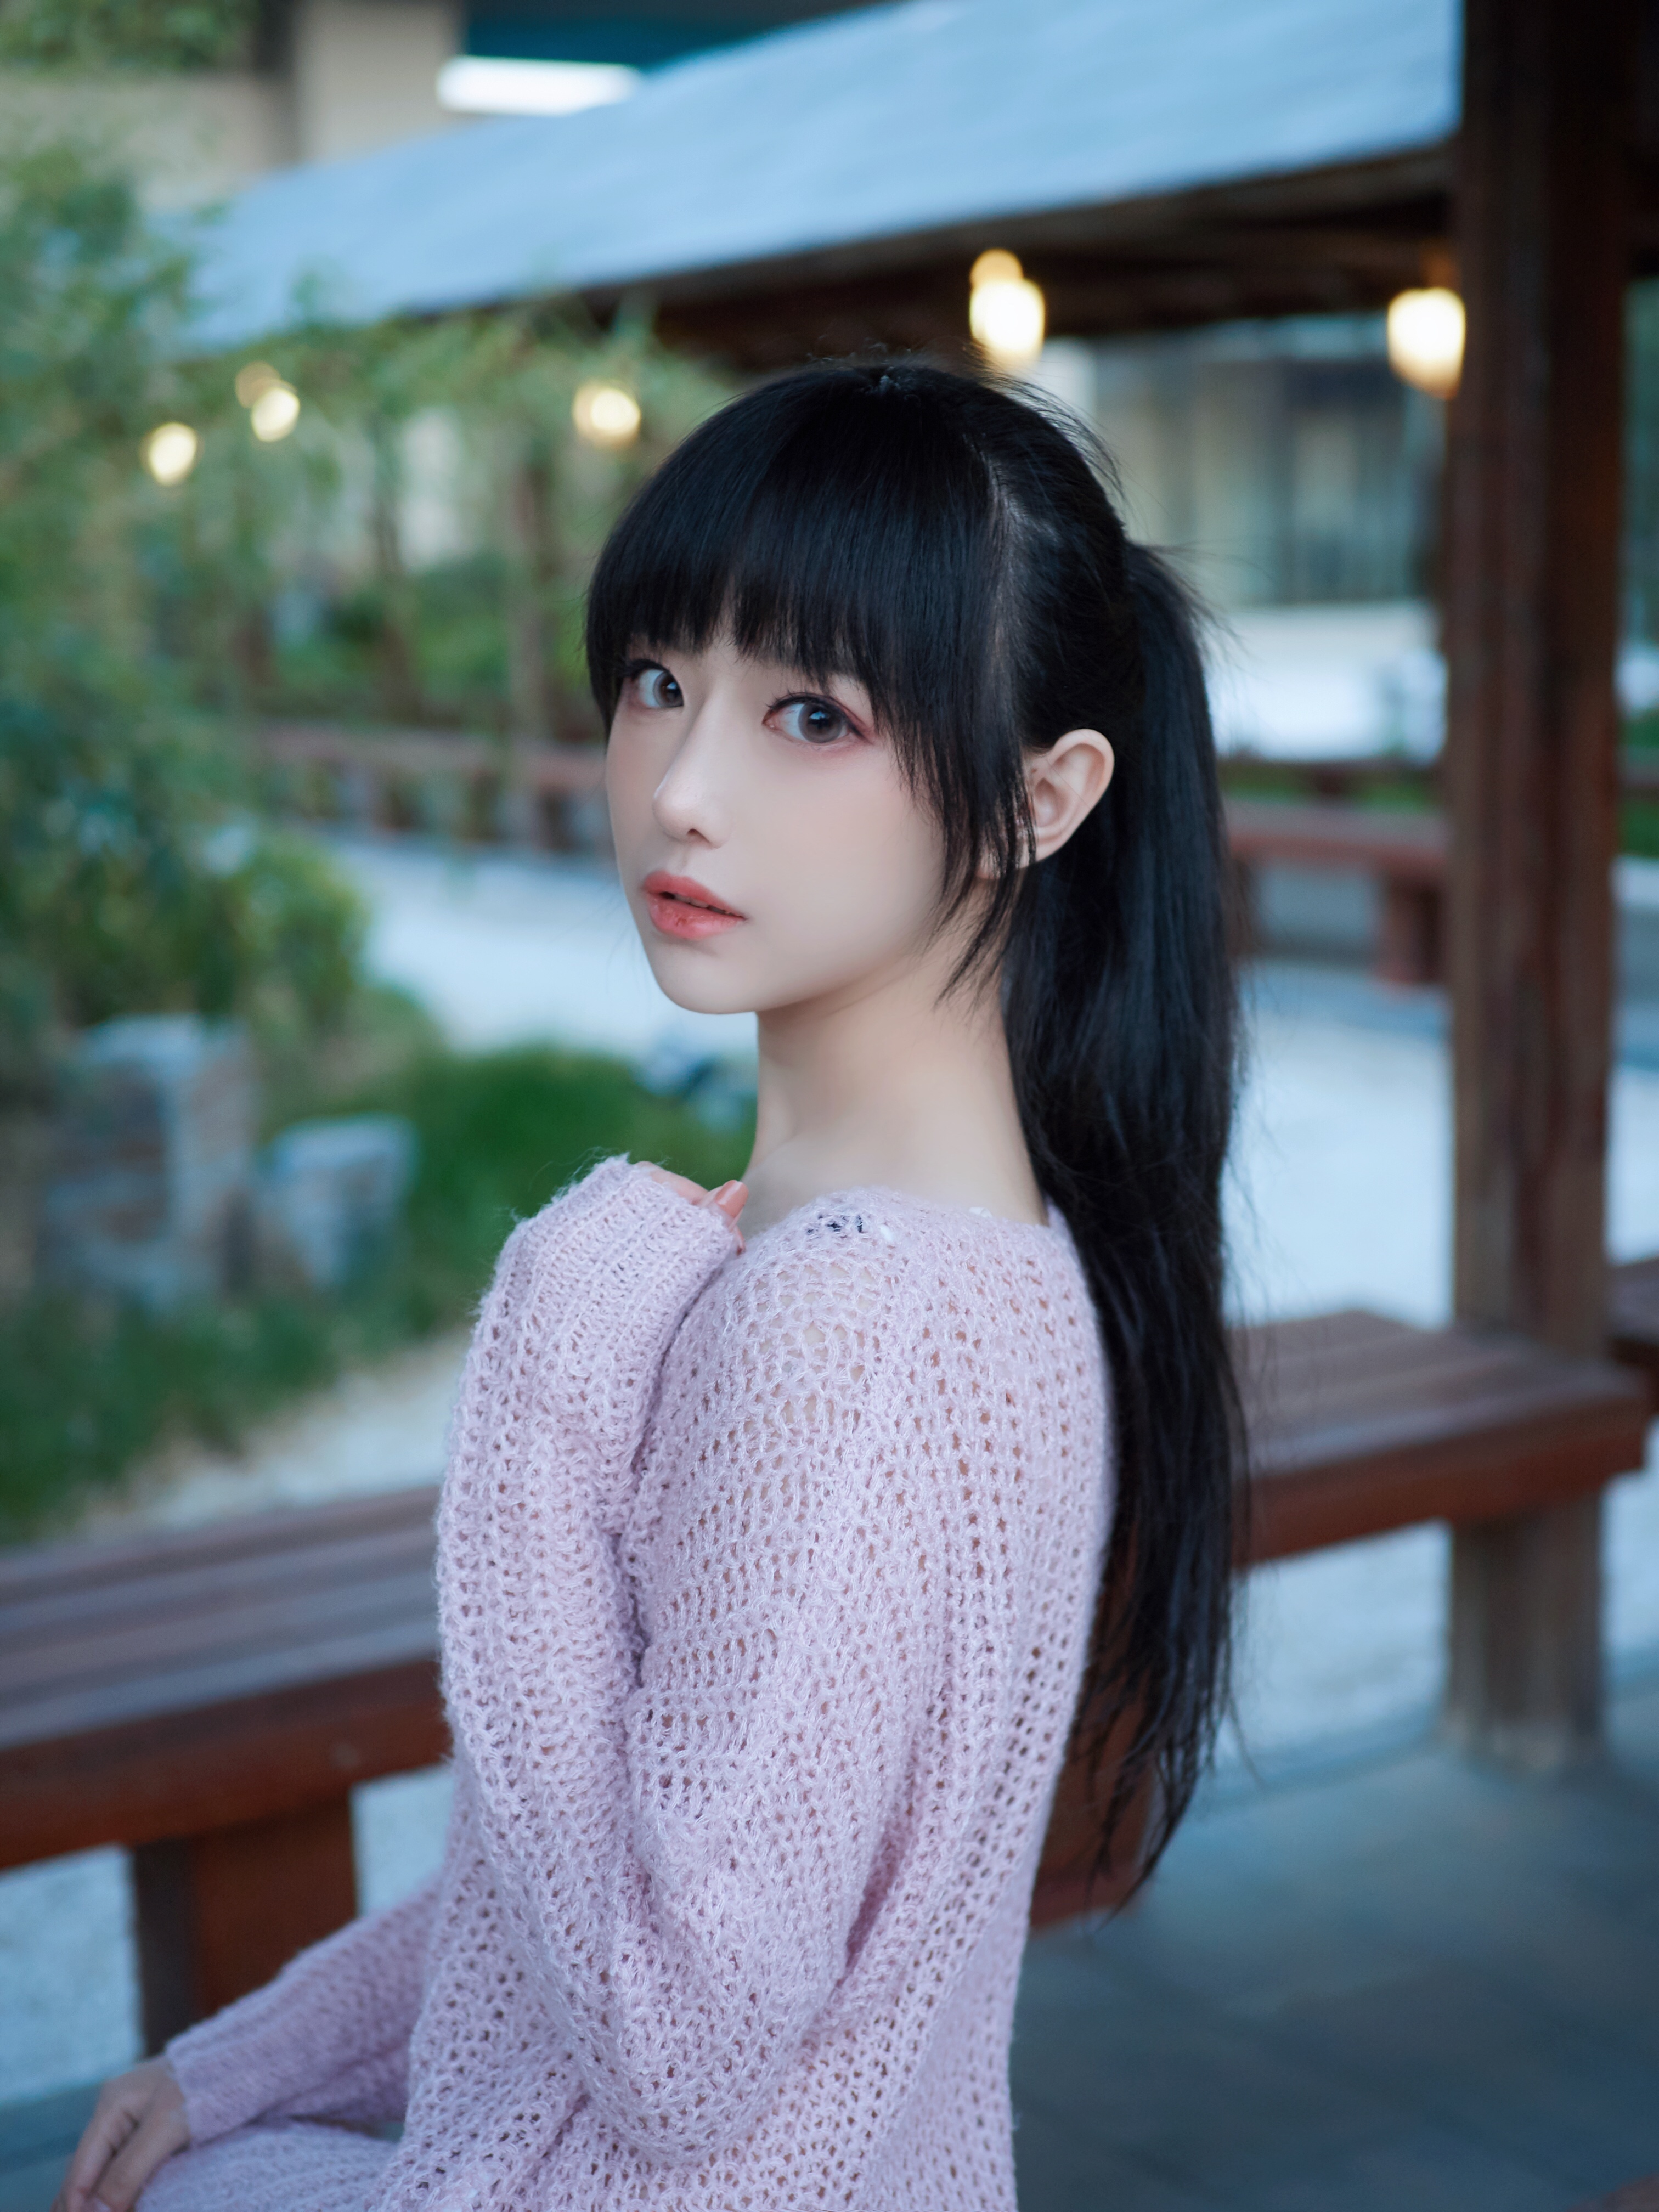 Sweater Black Hair Long Hair Outdoors Asian Women Shika XiaoLu 3024x4032